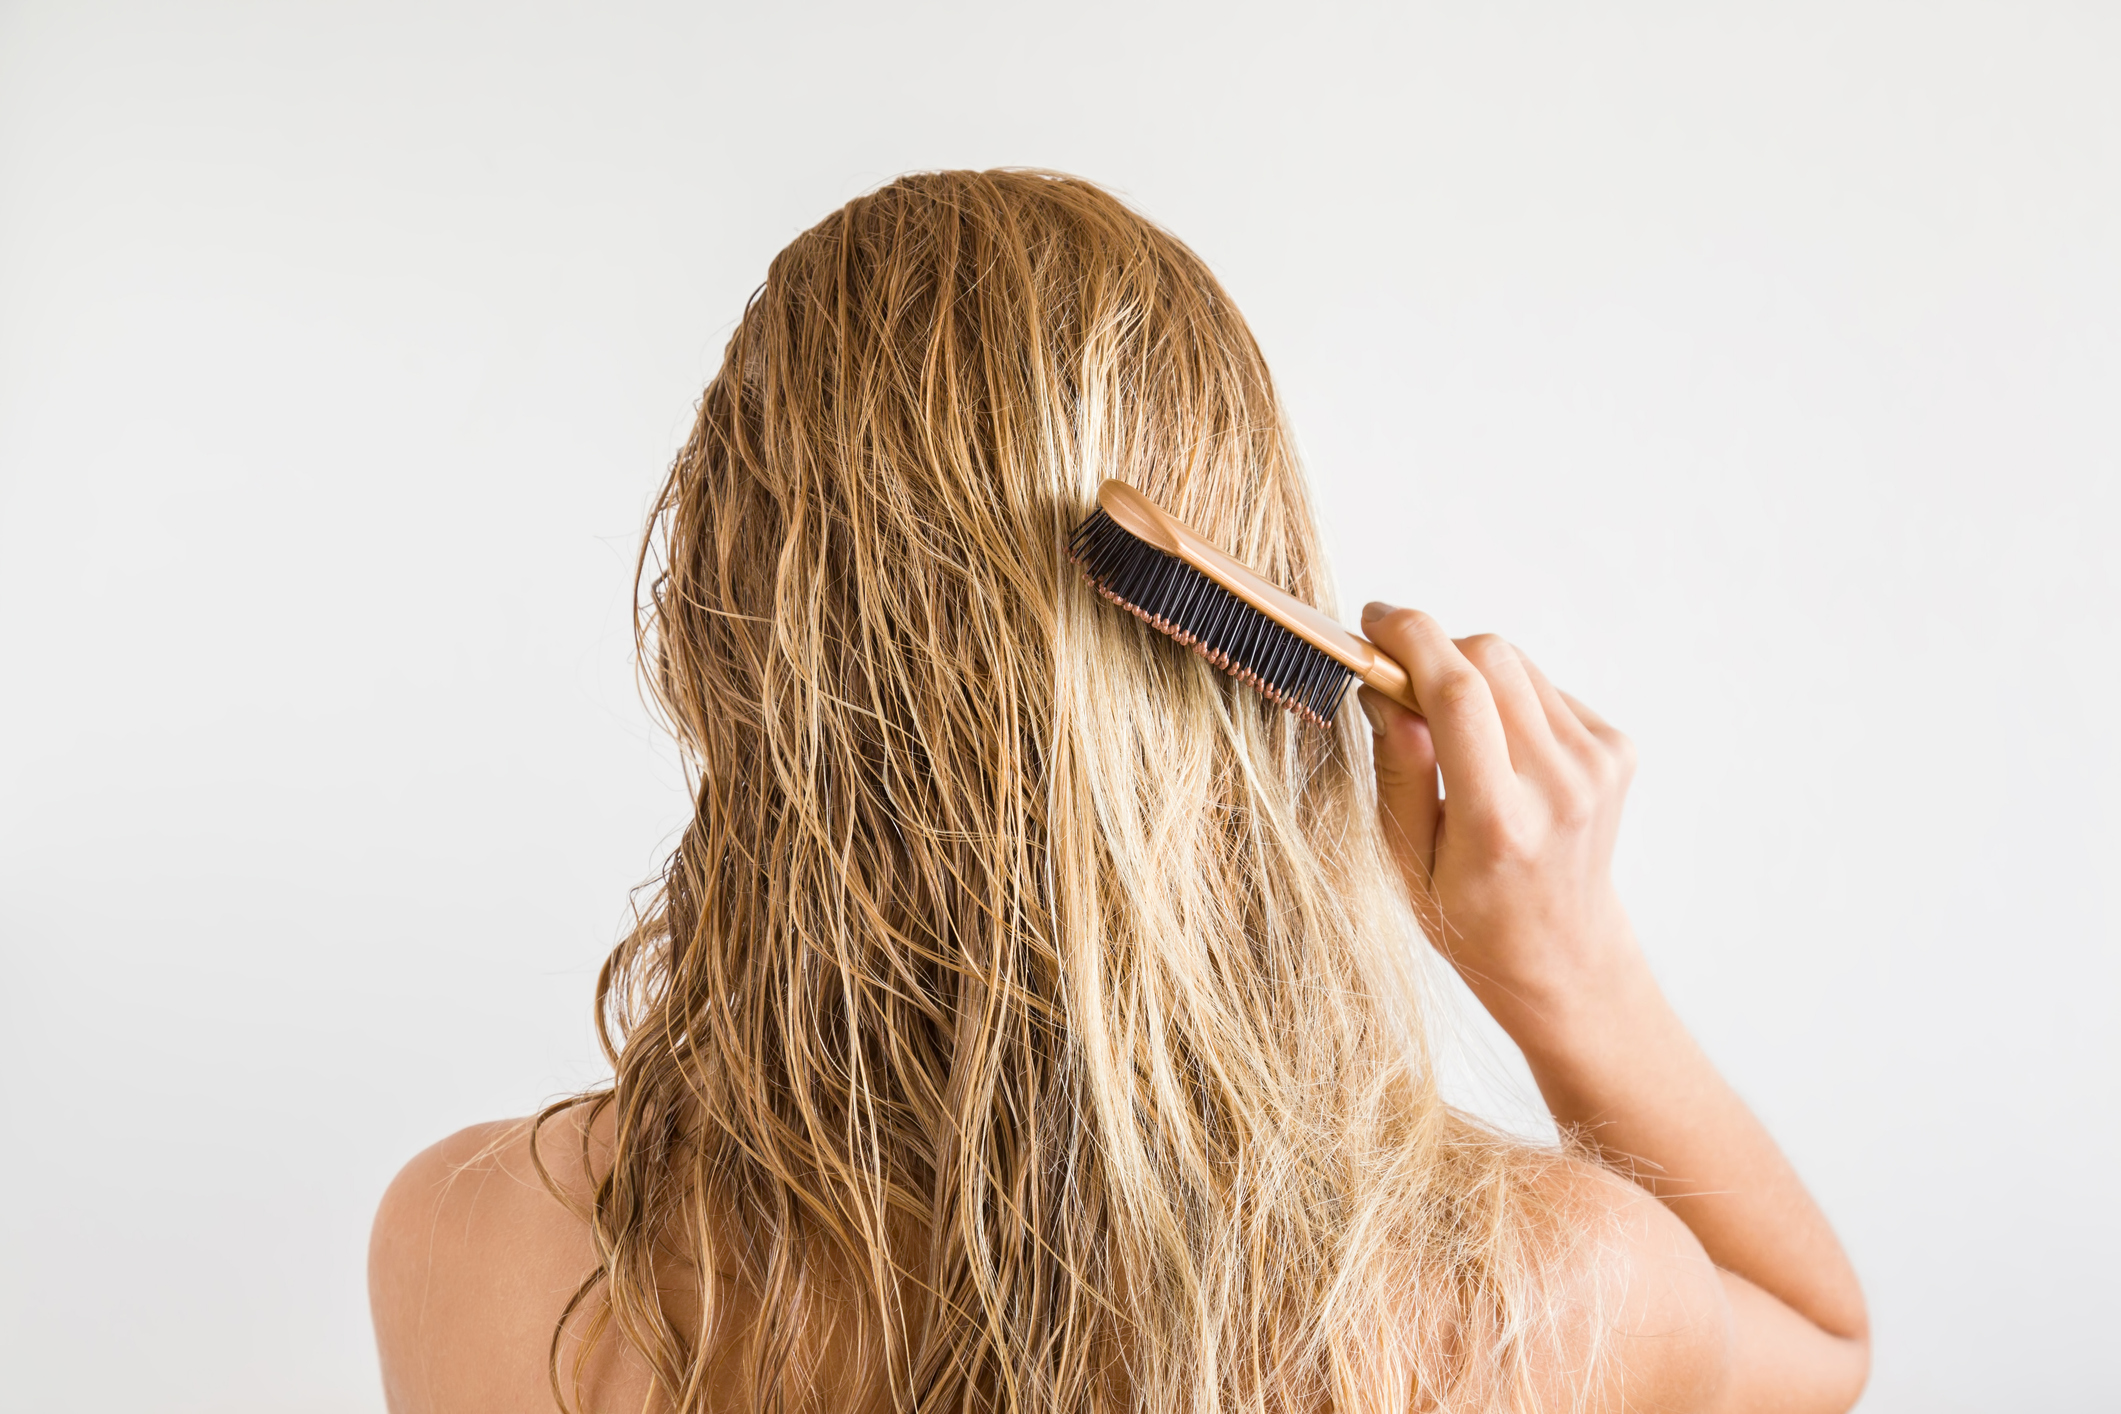 Οι 4 κακές συνήθειες που καταστρέφουν τα μαλλιά σου!